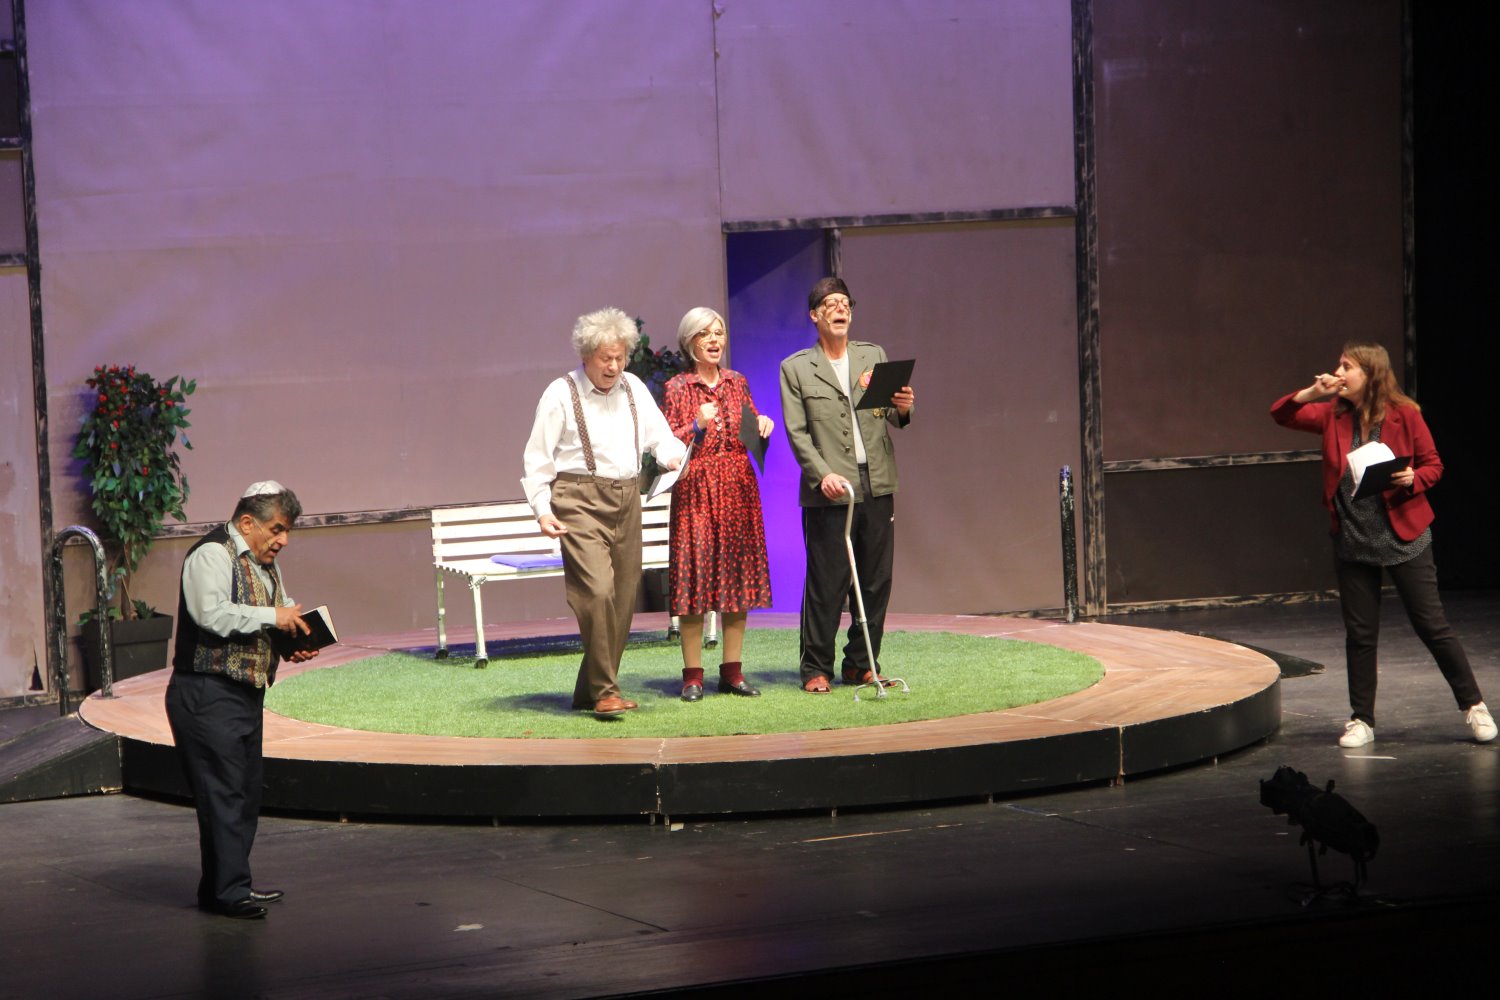 ההצגה סאבוטאז' במשכן לאמנויות הבמה אשדוד | צילום: פושאפ גירלס